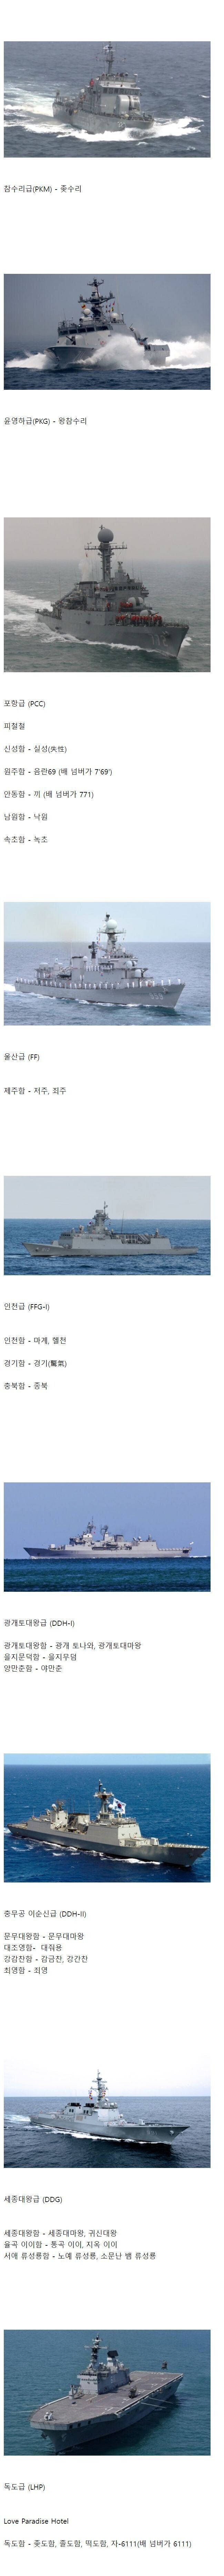 한국해군 함정별 별명모음 - .jpg